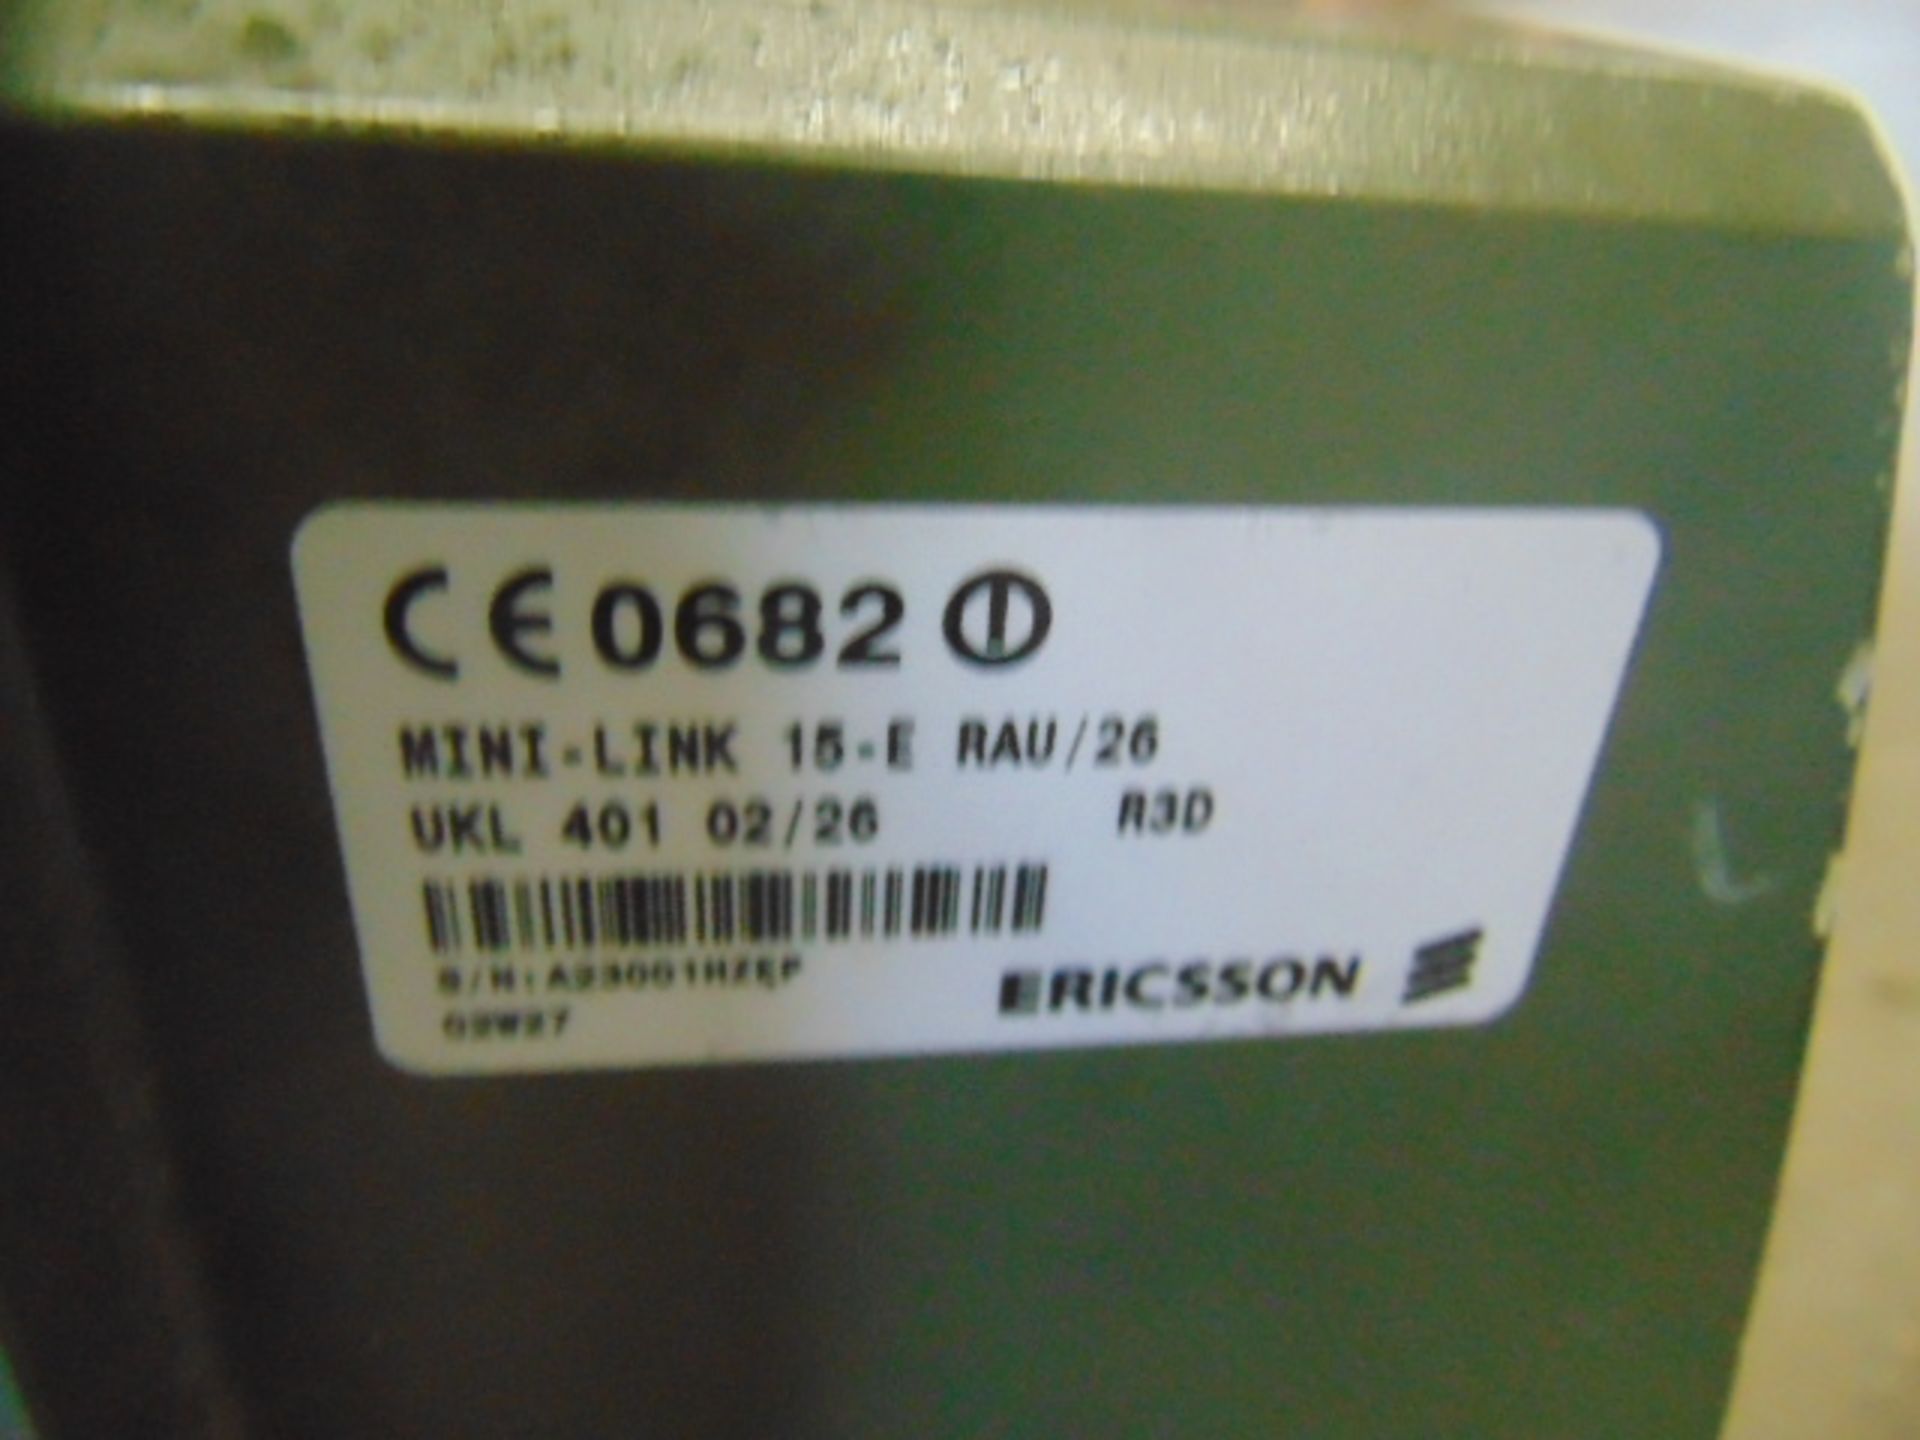 2 x Ericsson Mini-Link 15-E RAU/26 Antennas - Image 4 of 5